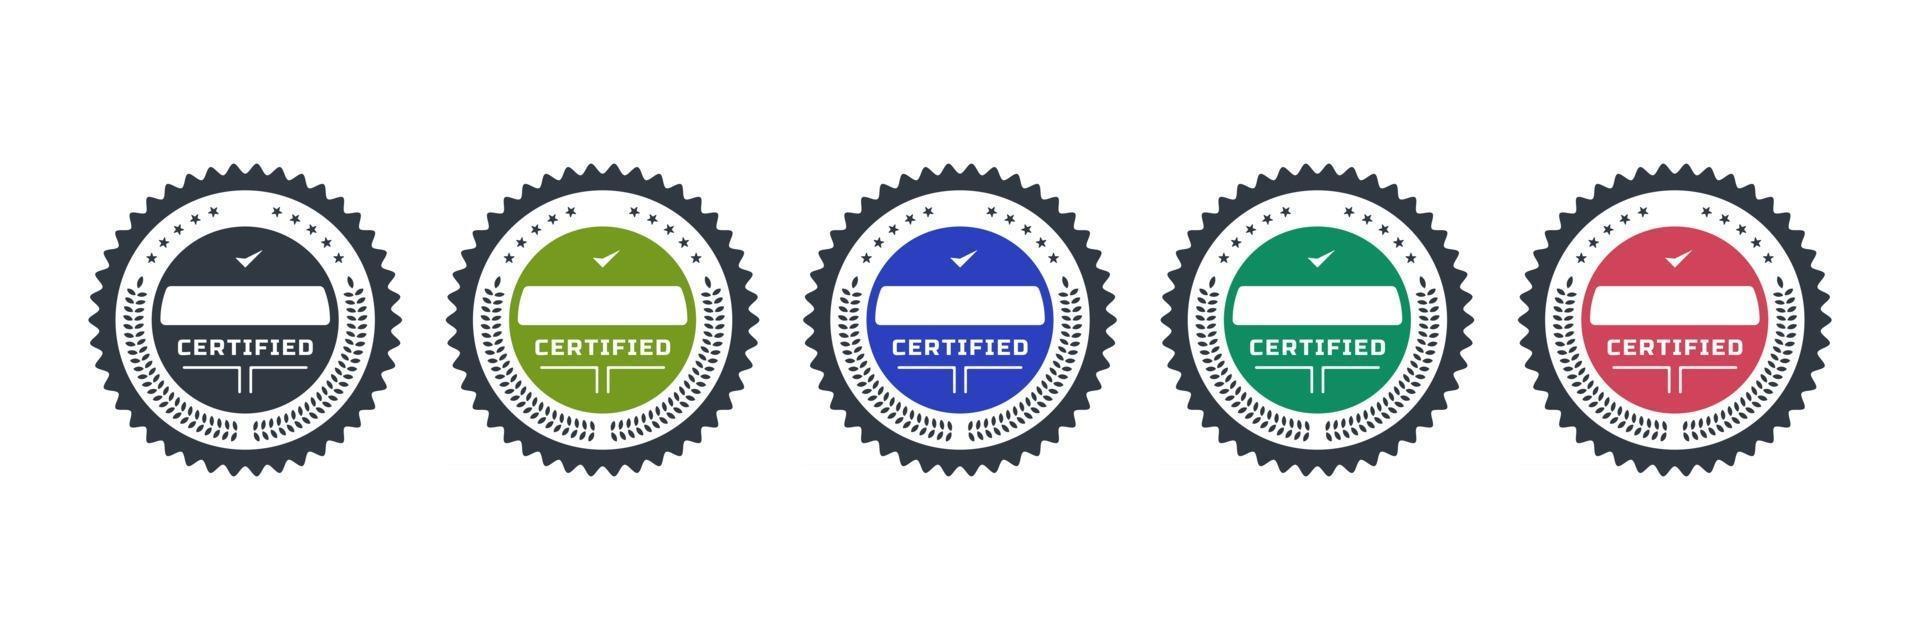 logotipos de insignia certificados para la plantilla de icono de emblema de vector de empresa de certificación